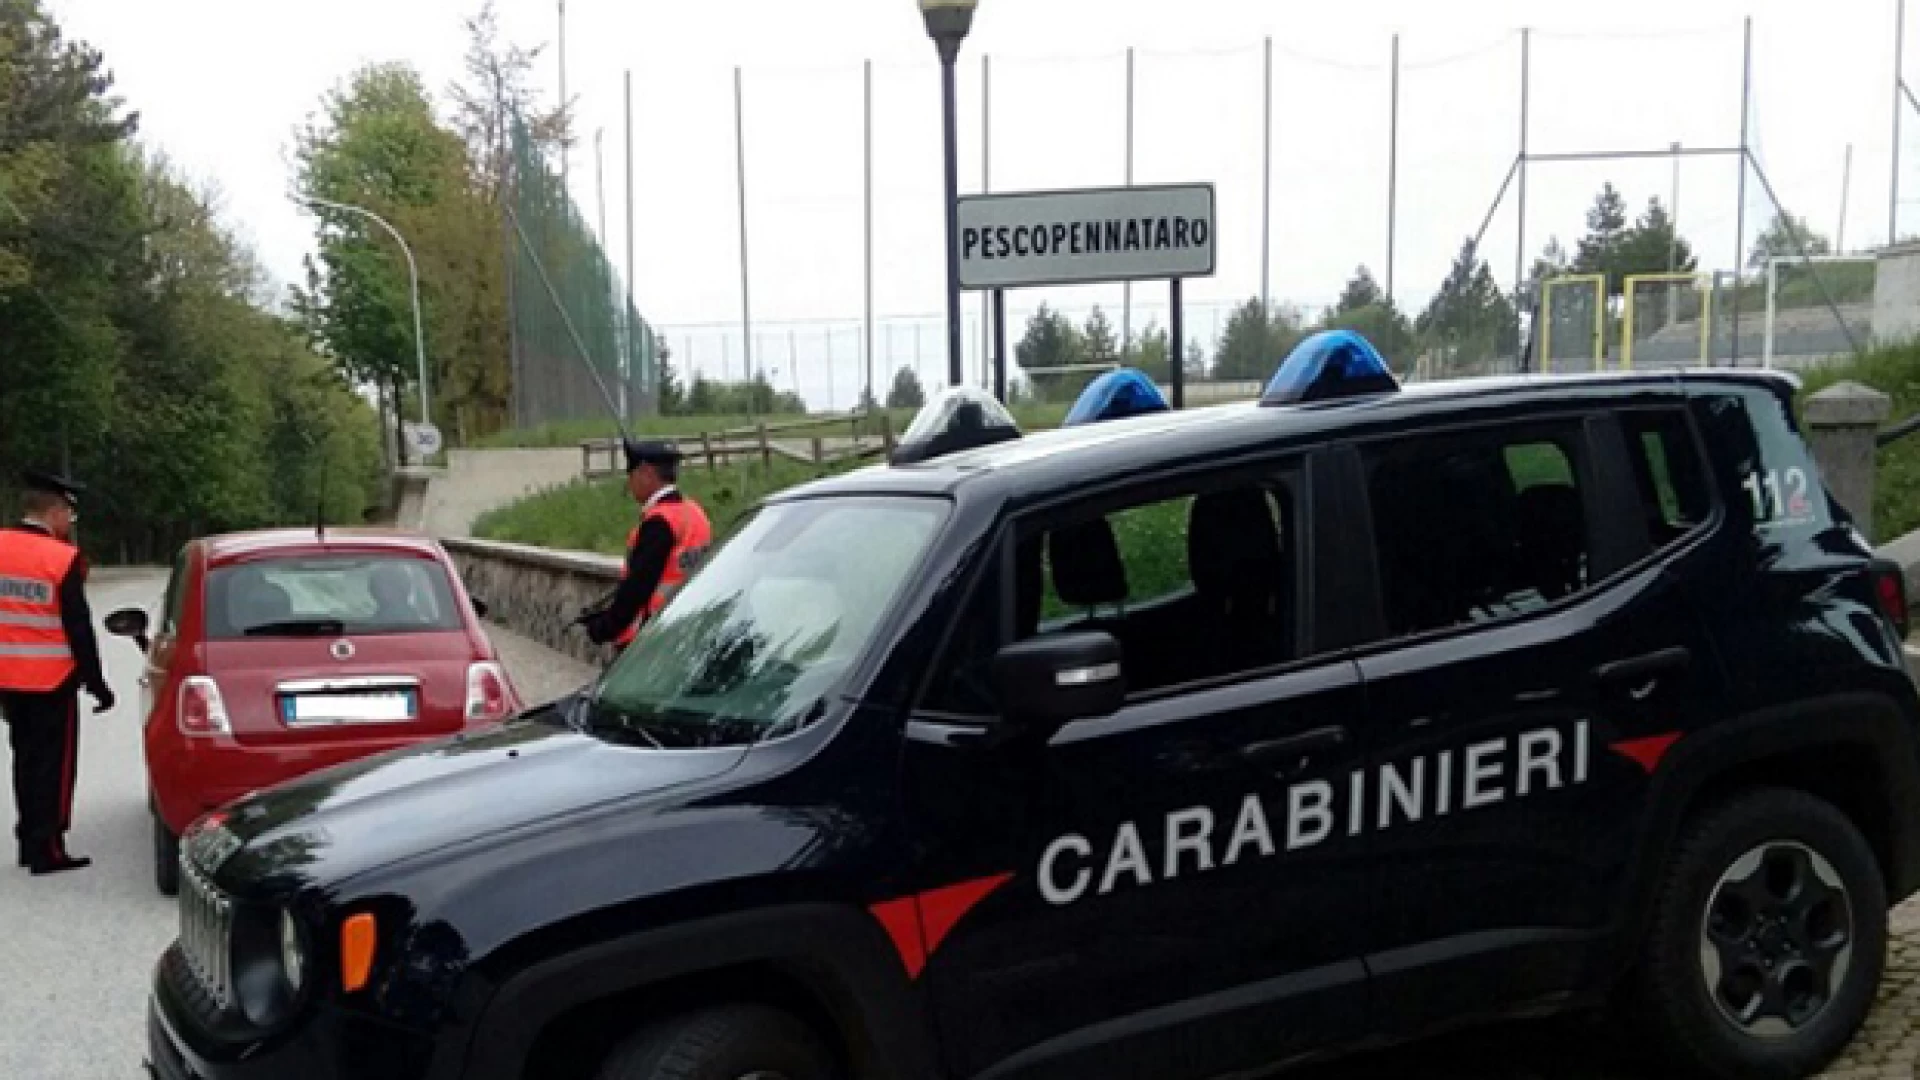 Isernia: Controllo straordinario del territorio. Carabinieri in azione in varie zone della provincia di Isernia.